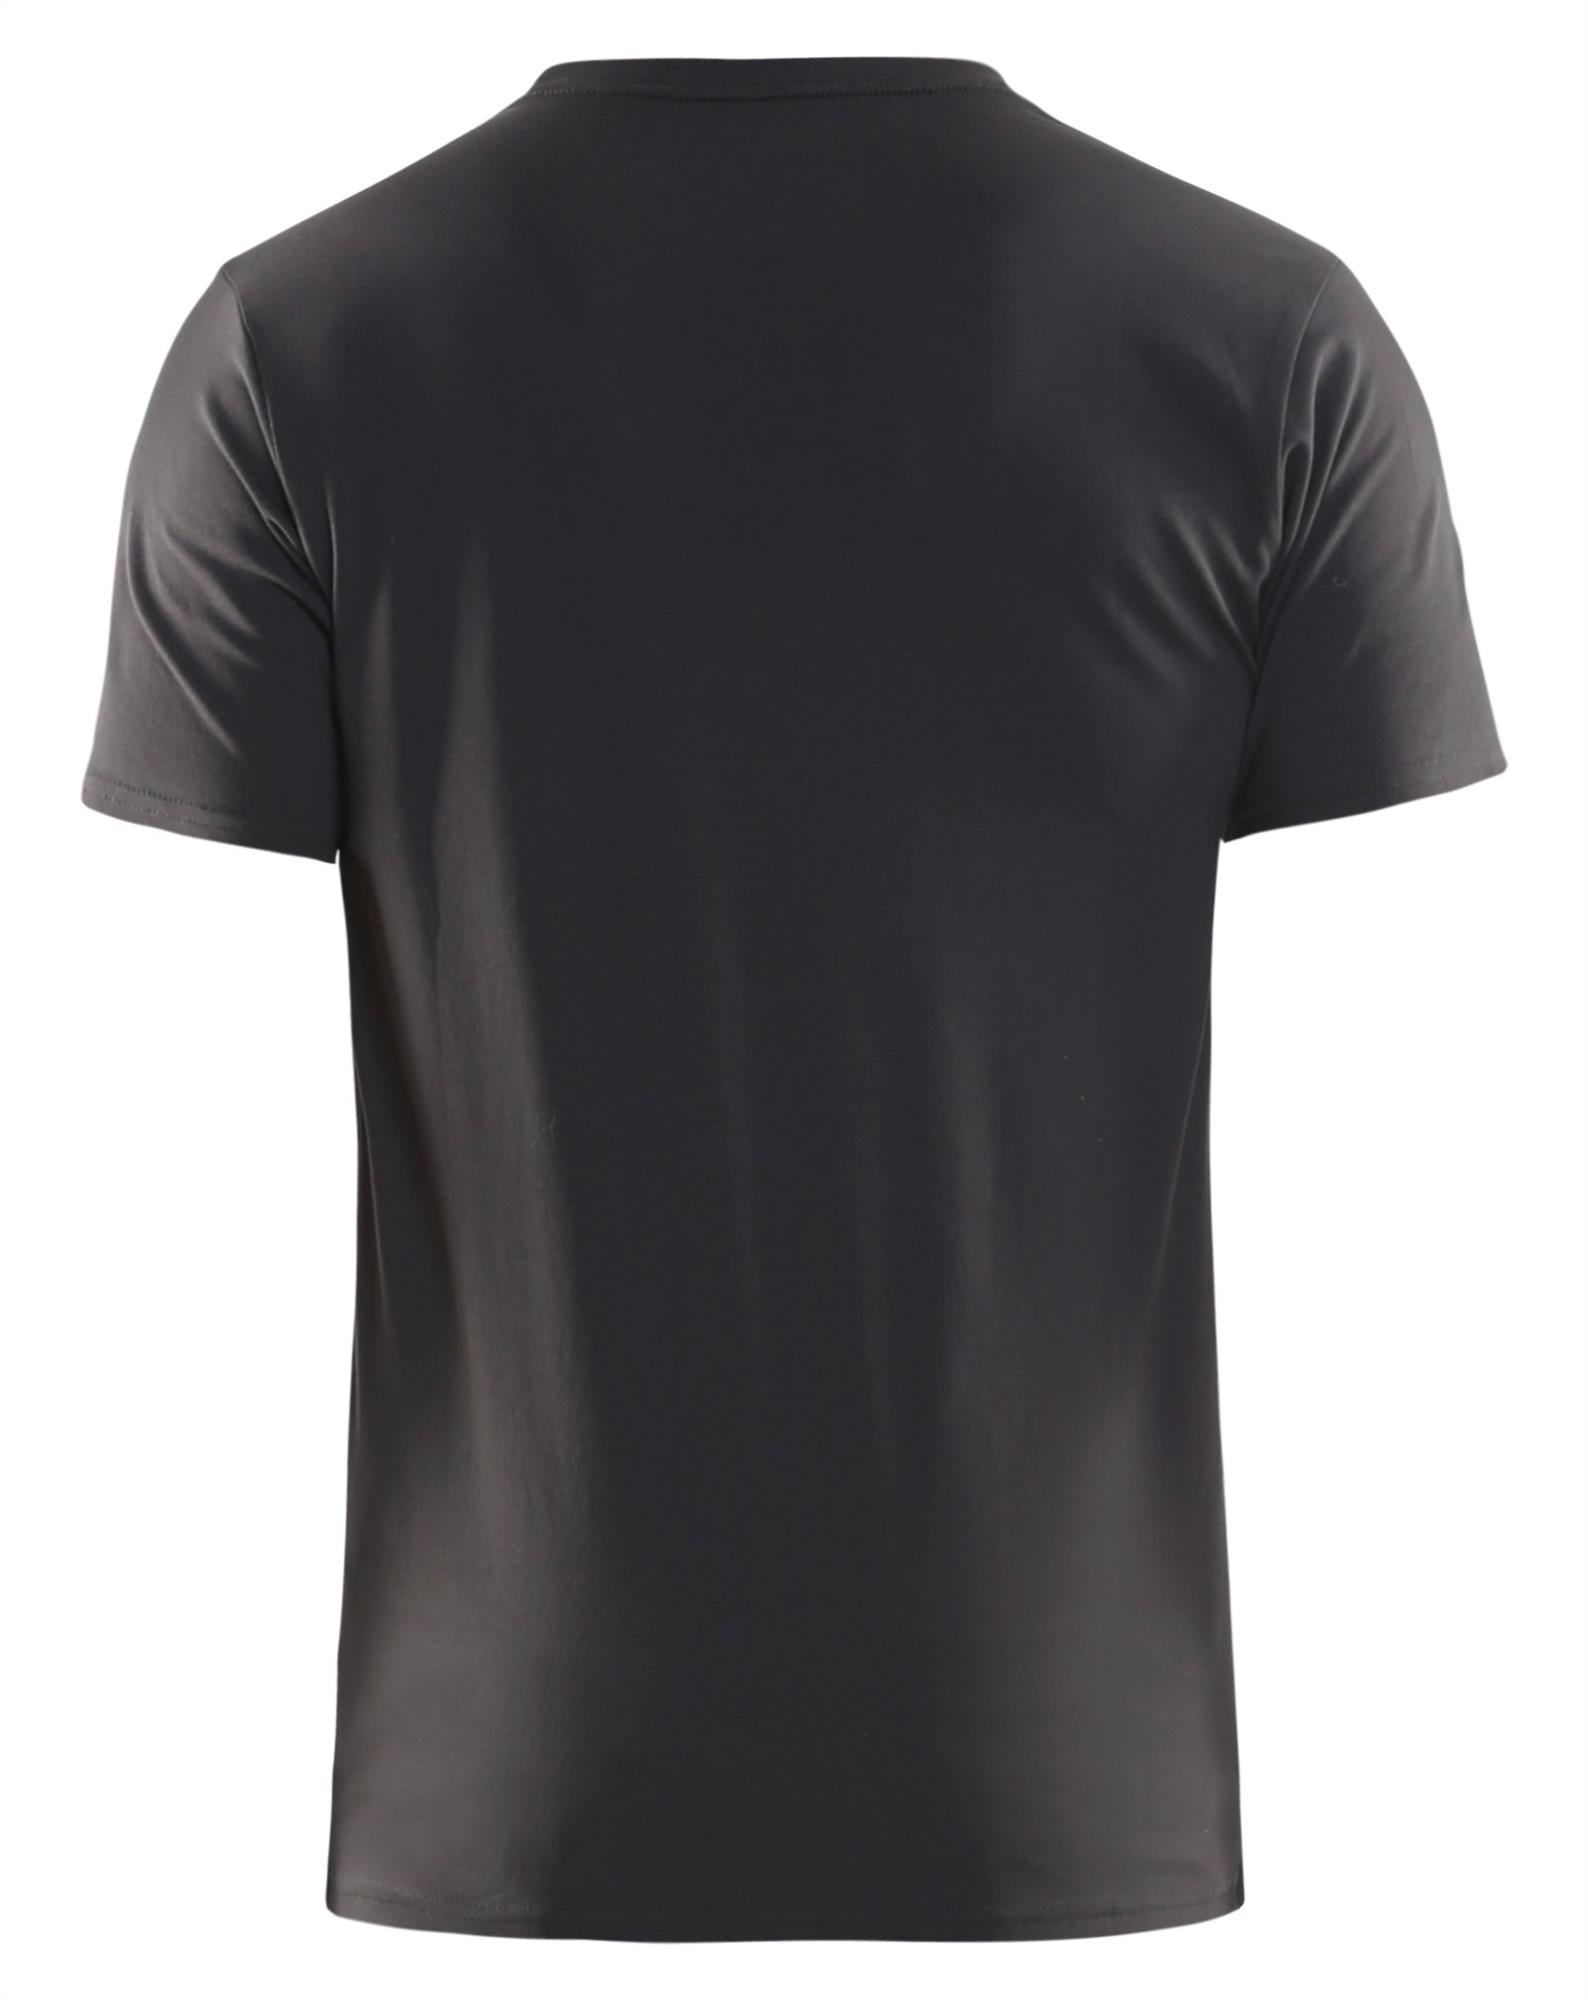 Blaklader dark grey men's stretch cotton slim-fit T-shirt #3533